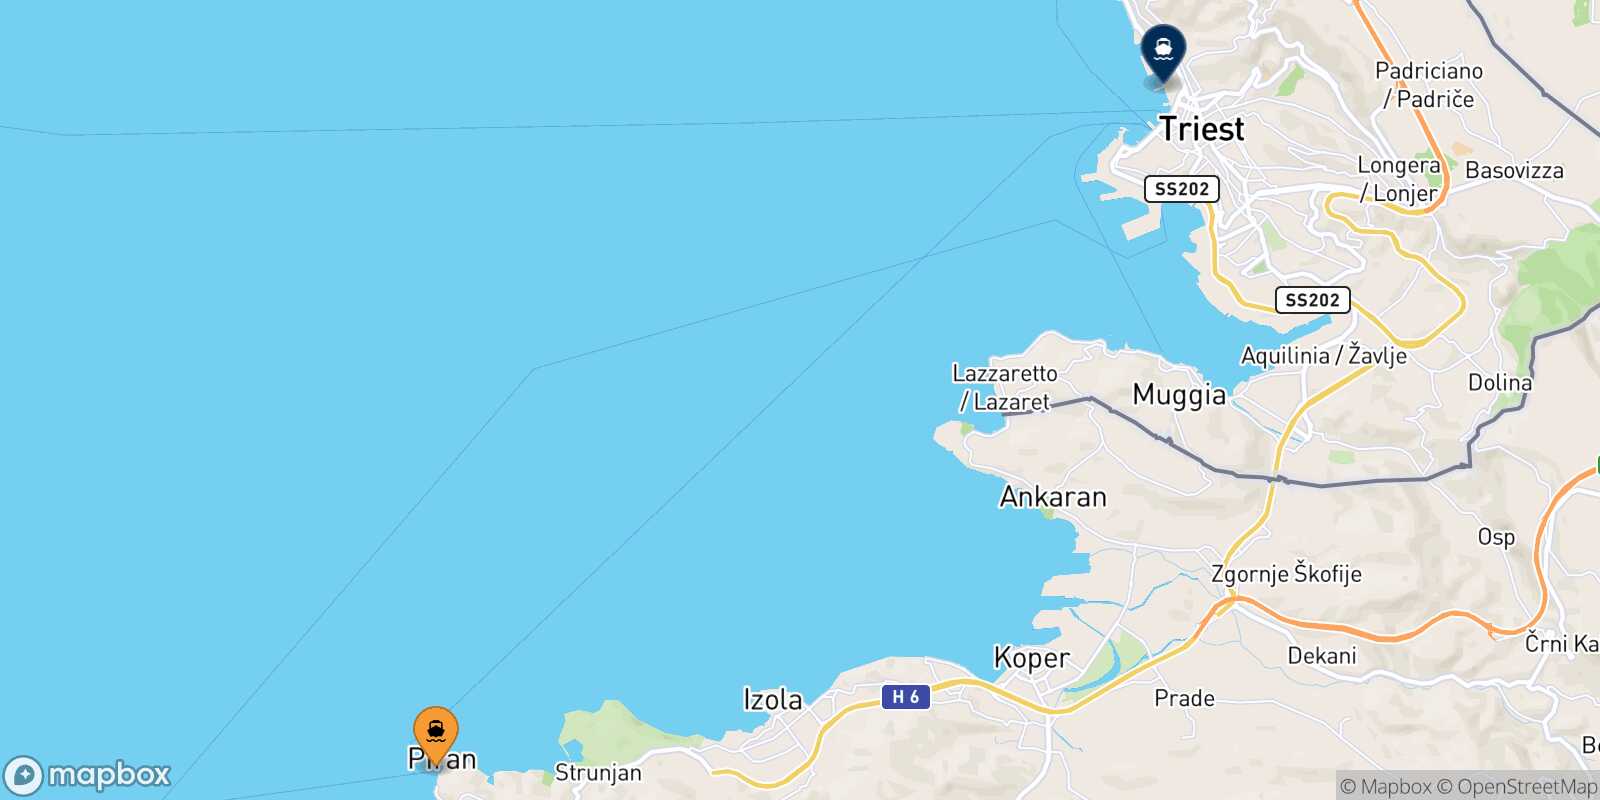 Mapa de la ruta Piran Trieste